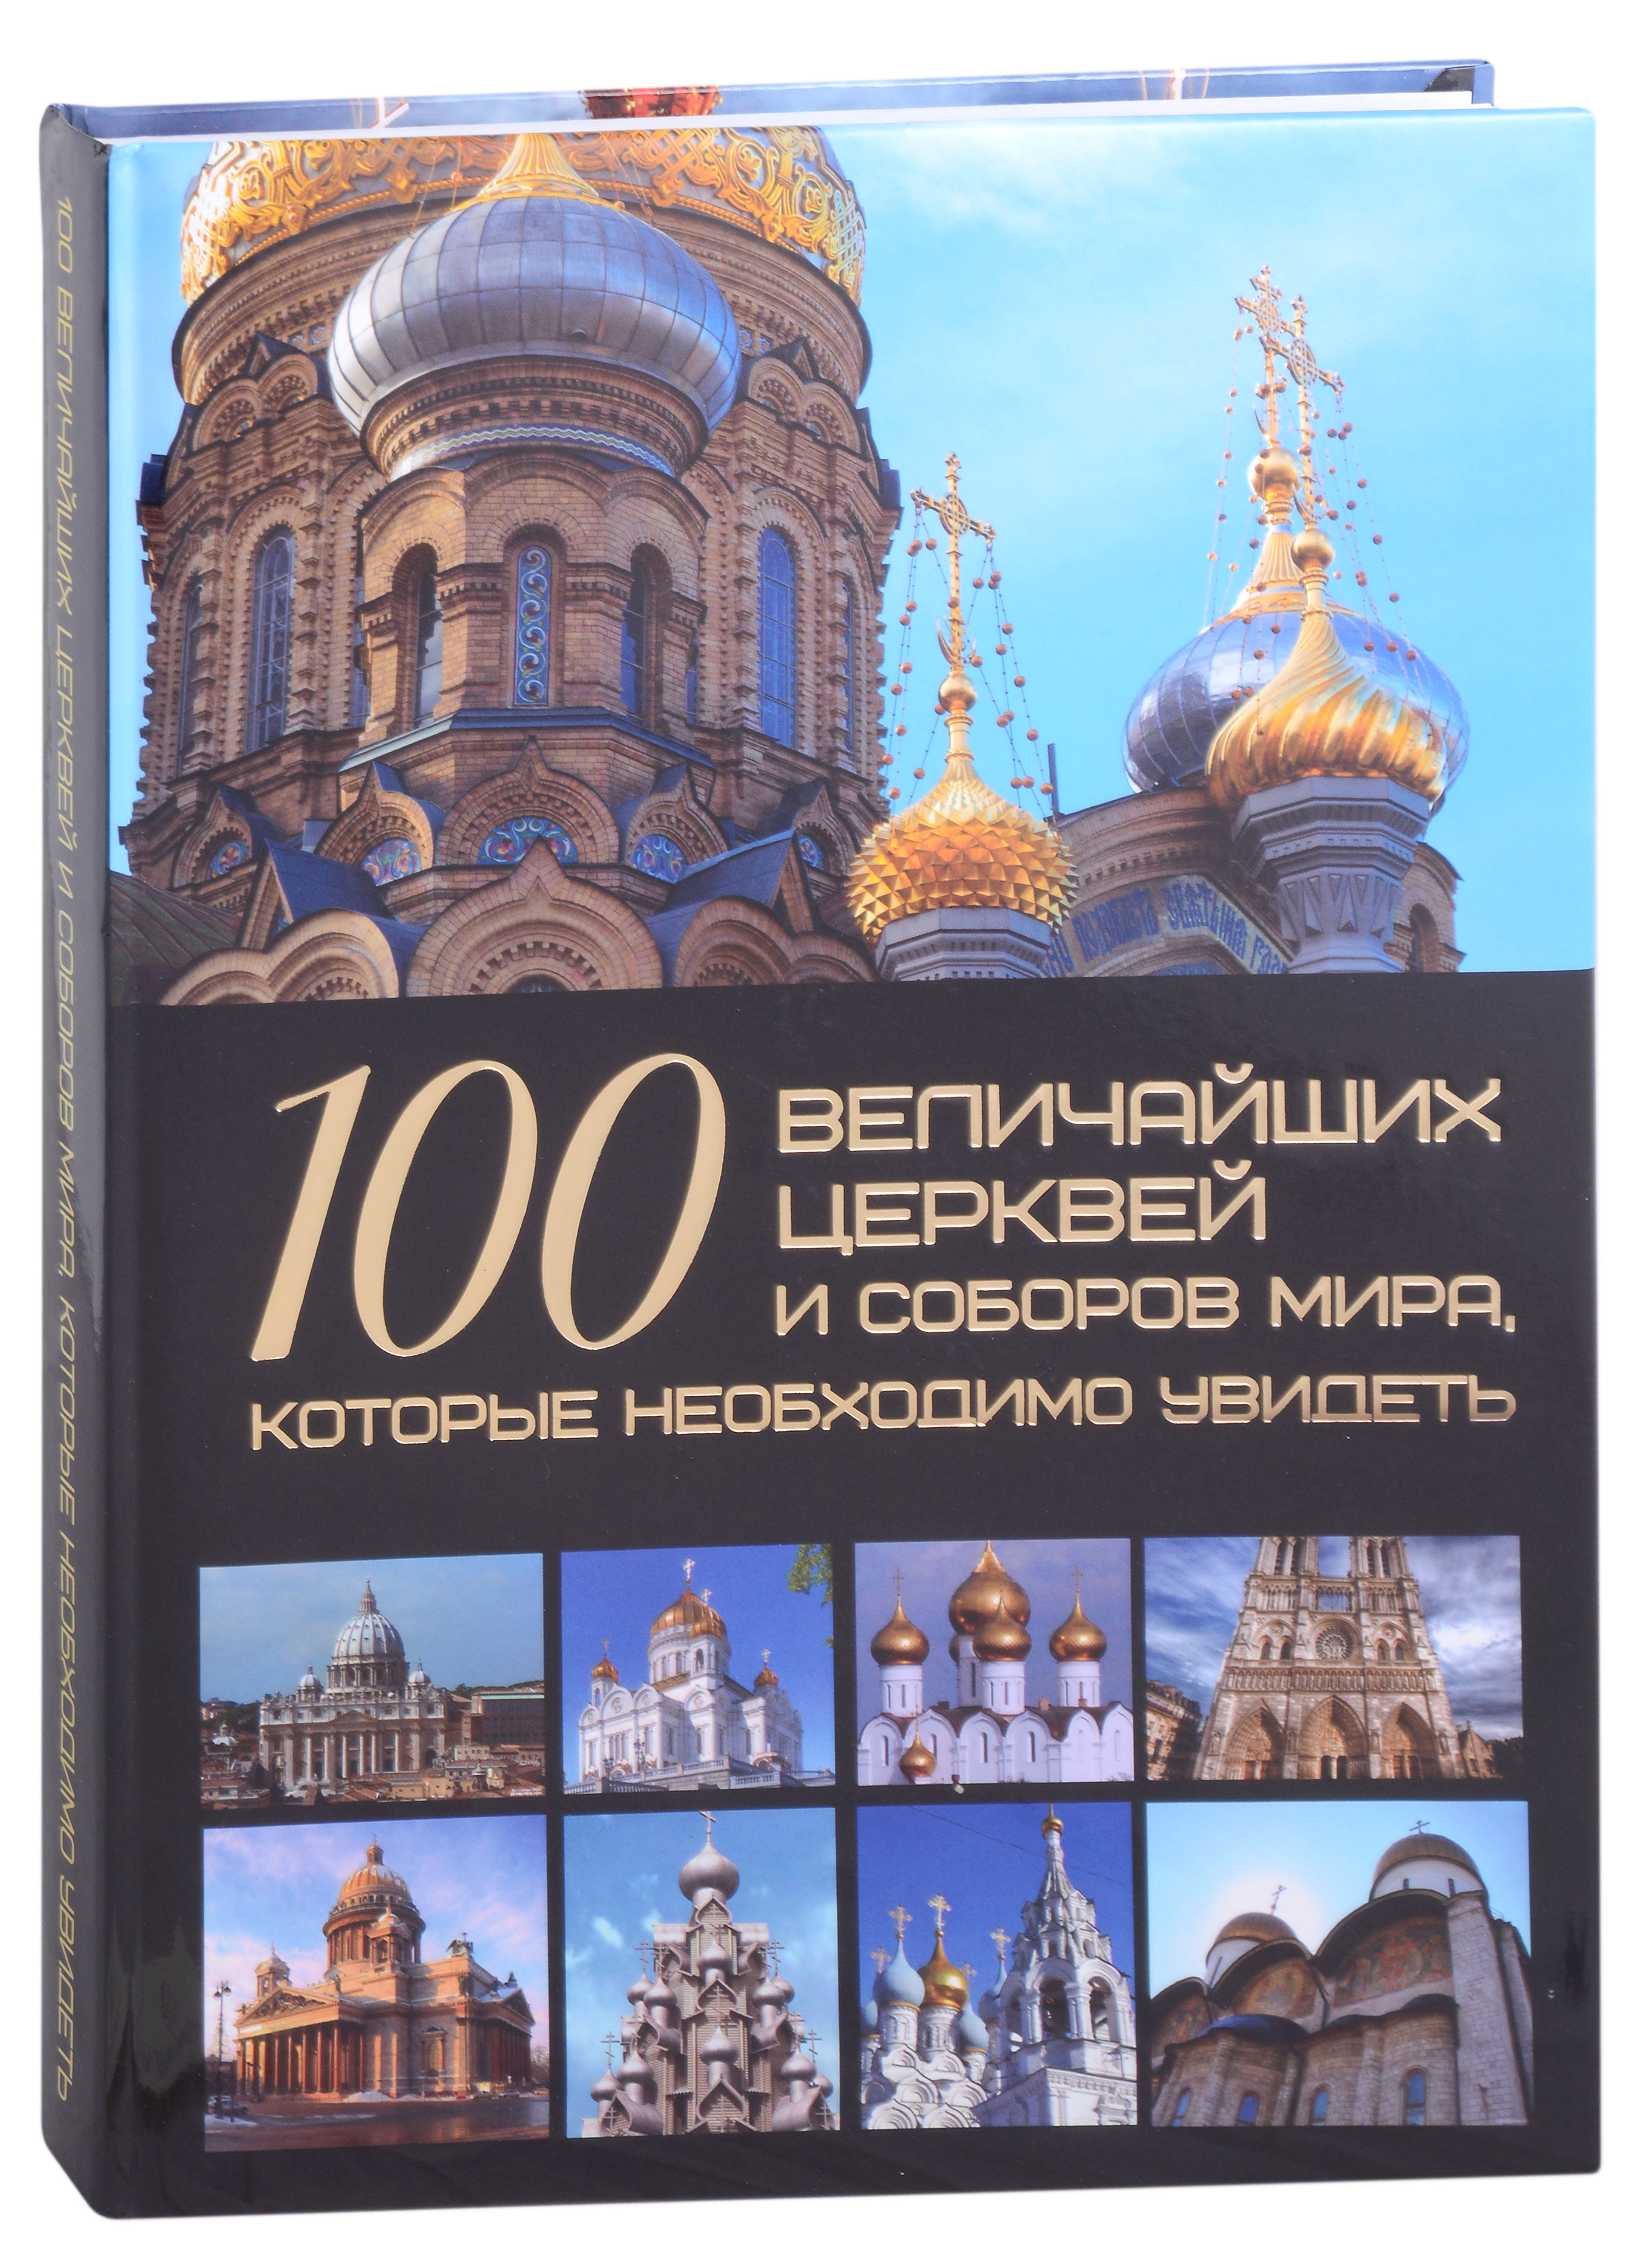 гусев игорь евгеньевич 100 величайших замков которые необходимо увидеть 100 величайших церквей и соборов мира, которые необходимо увидеть